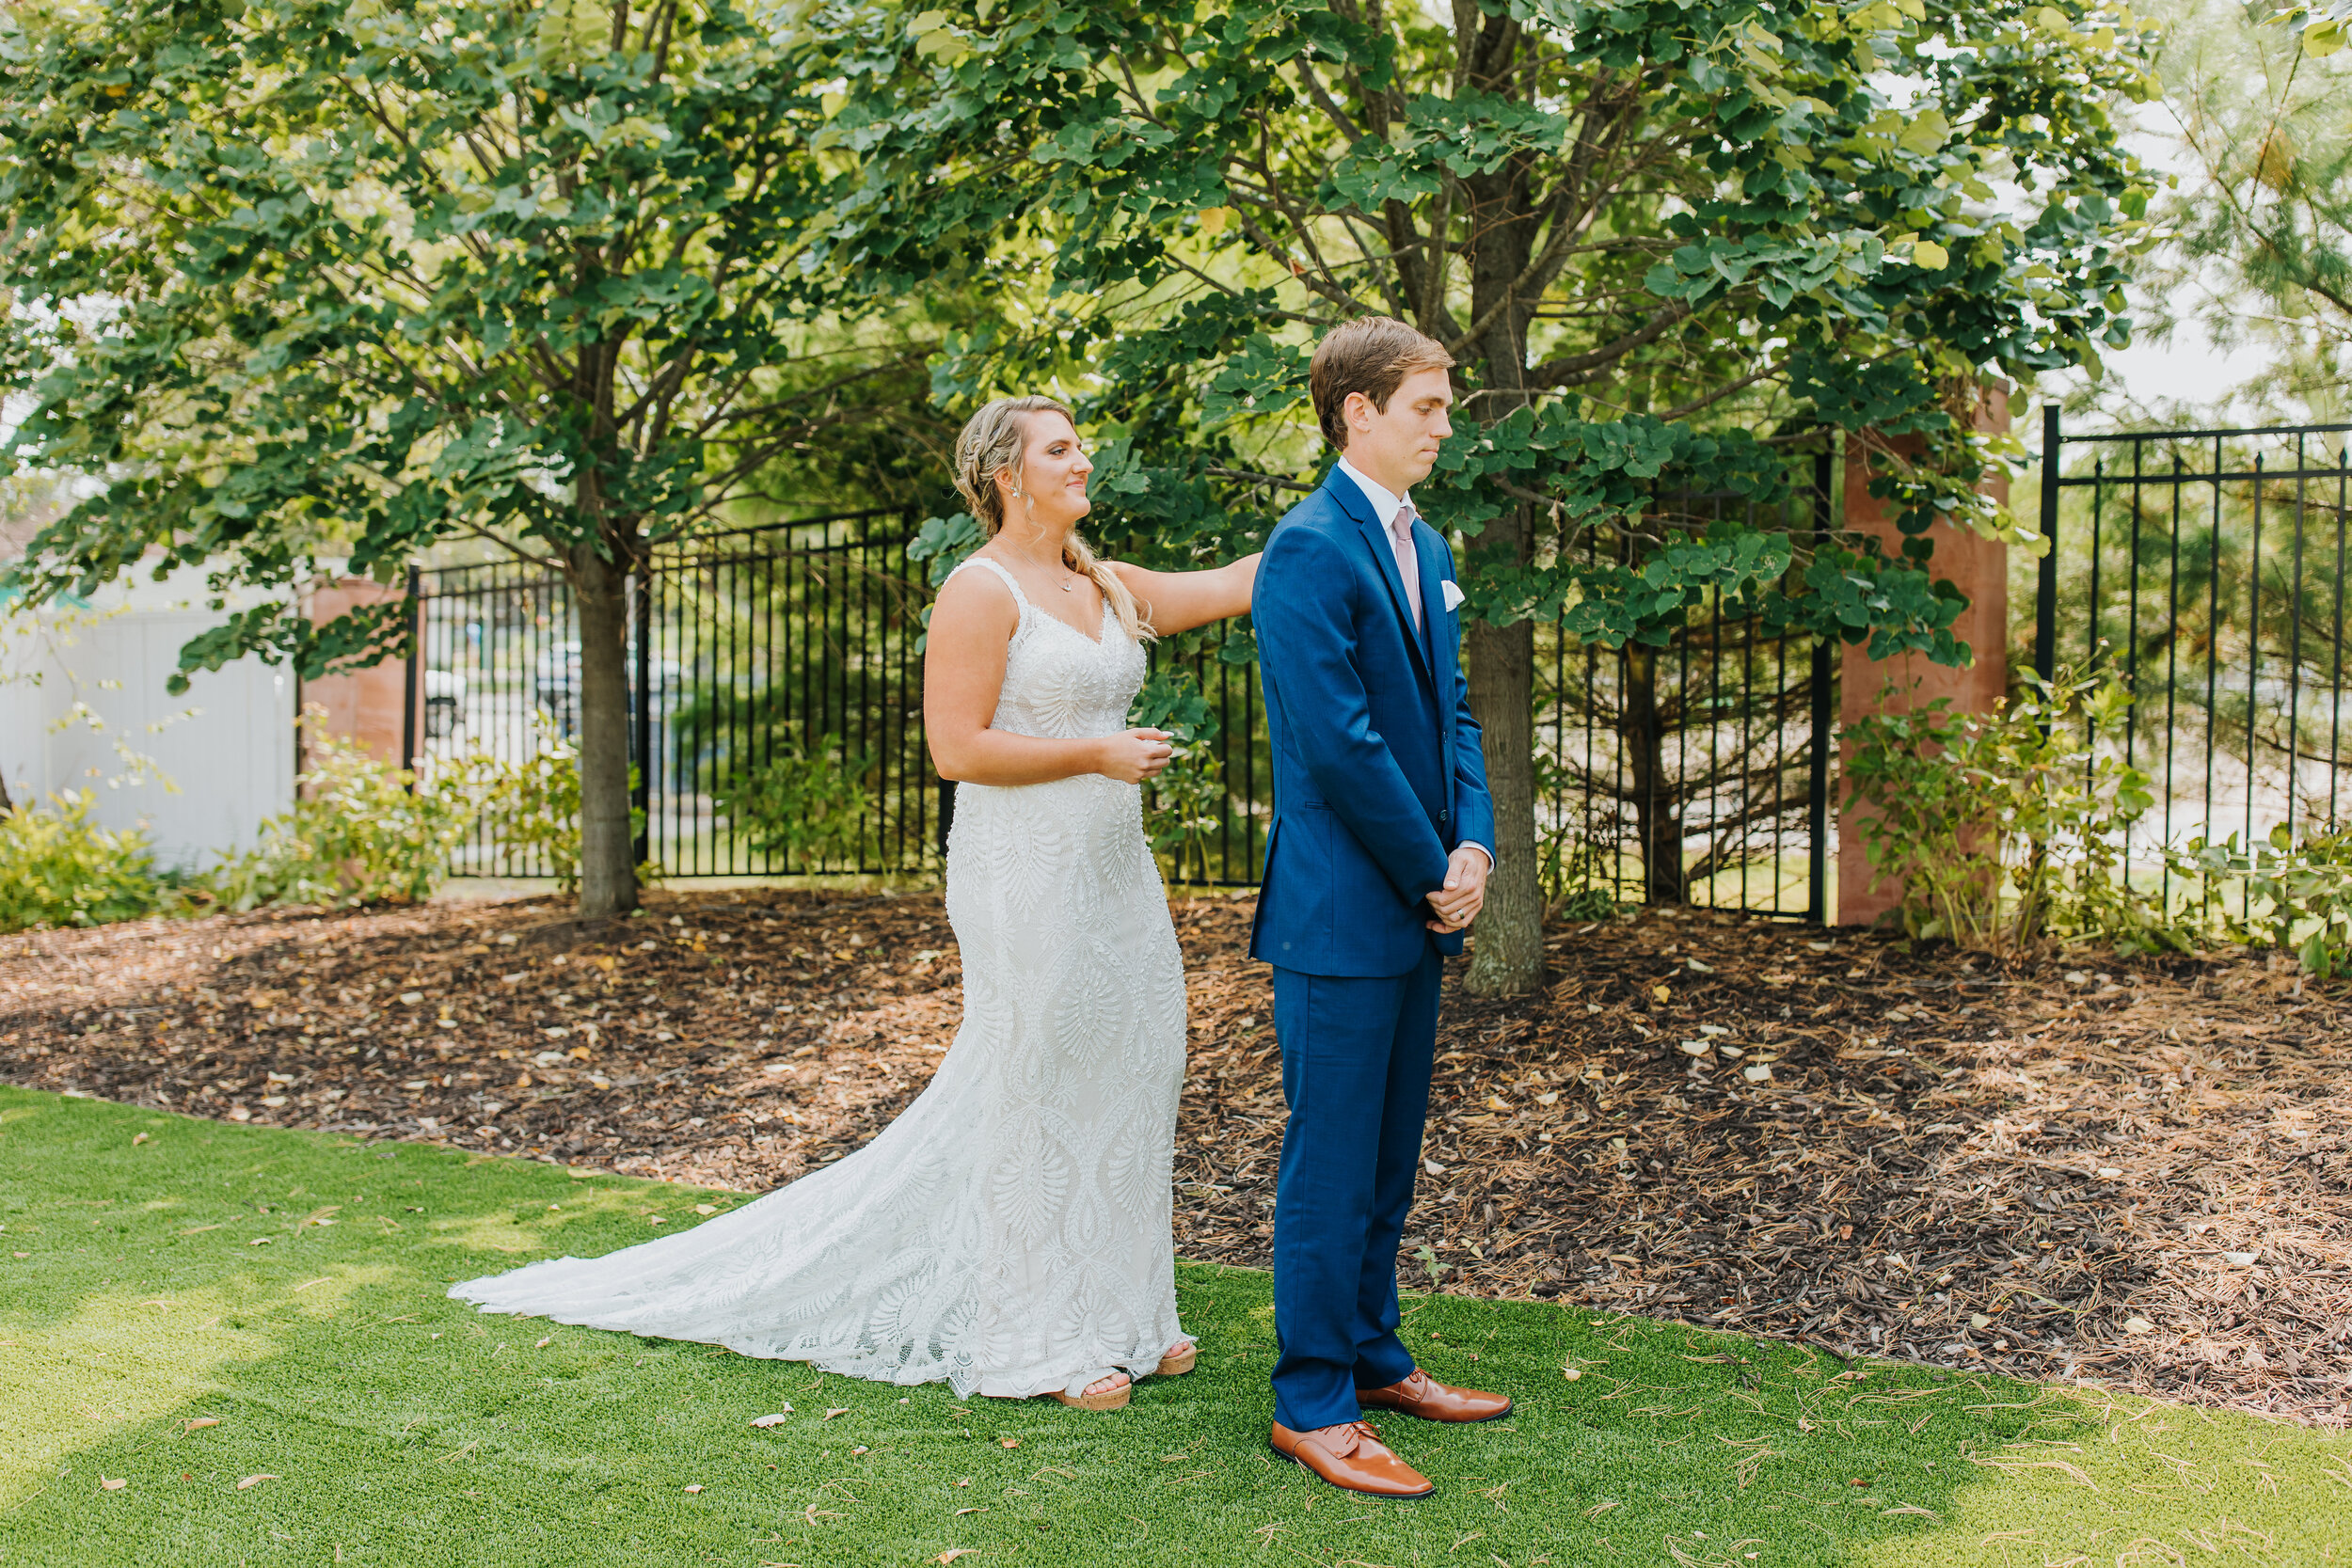 Ashton & Dan - Married - Nathaniel Jensen Photography - Omaha Nebraska Wedding Photographer-101.jpg